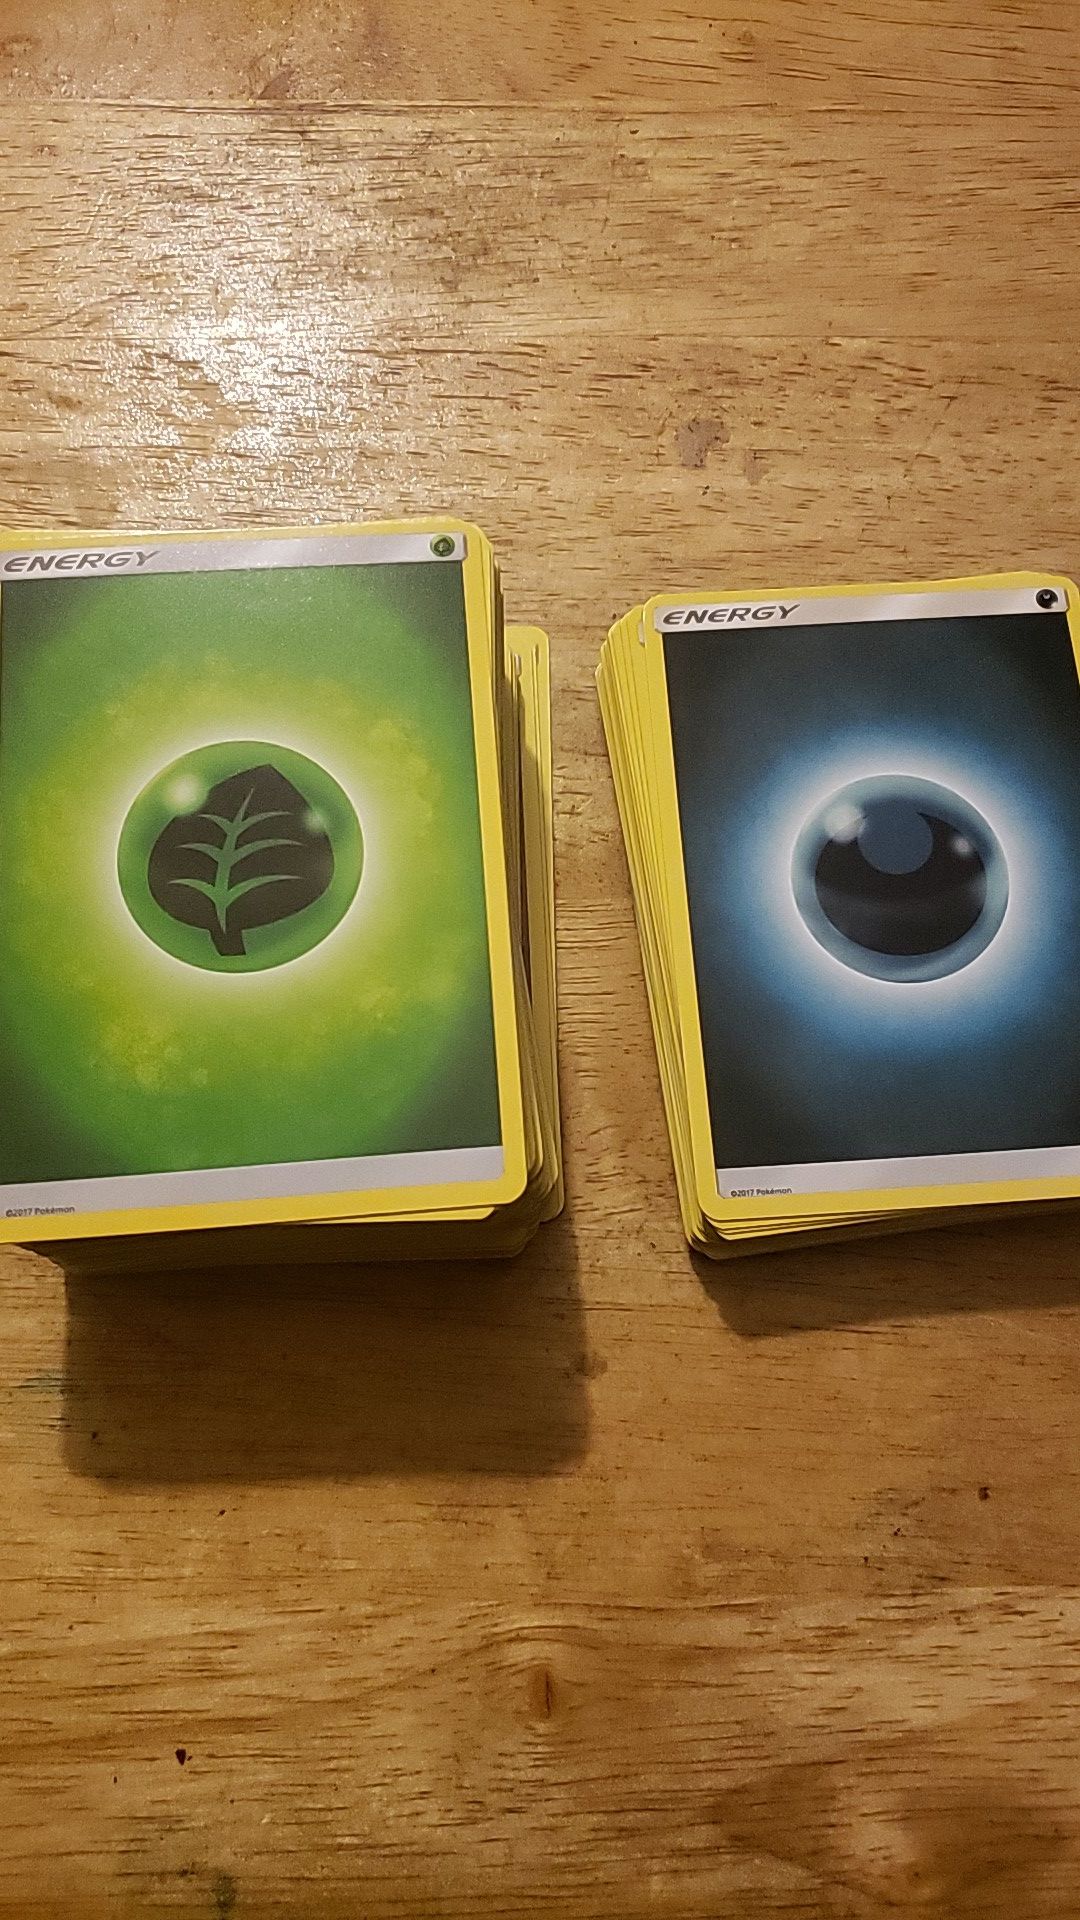 2017 pokemon energy cards